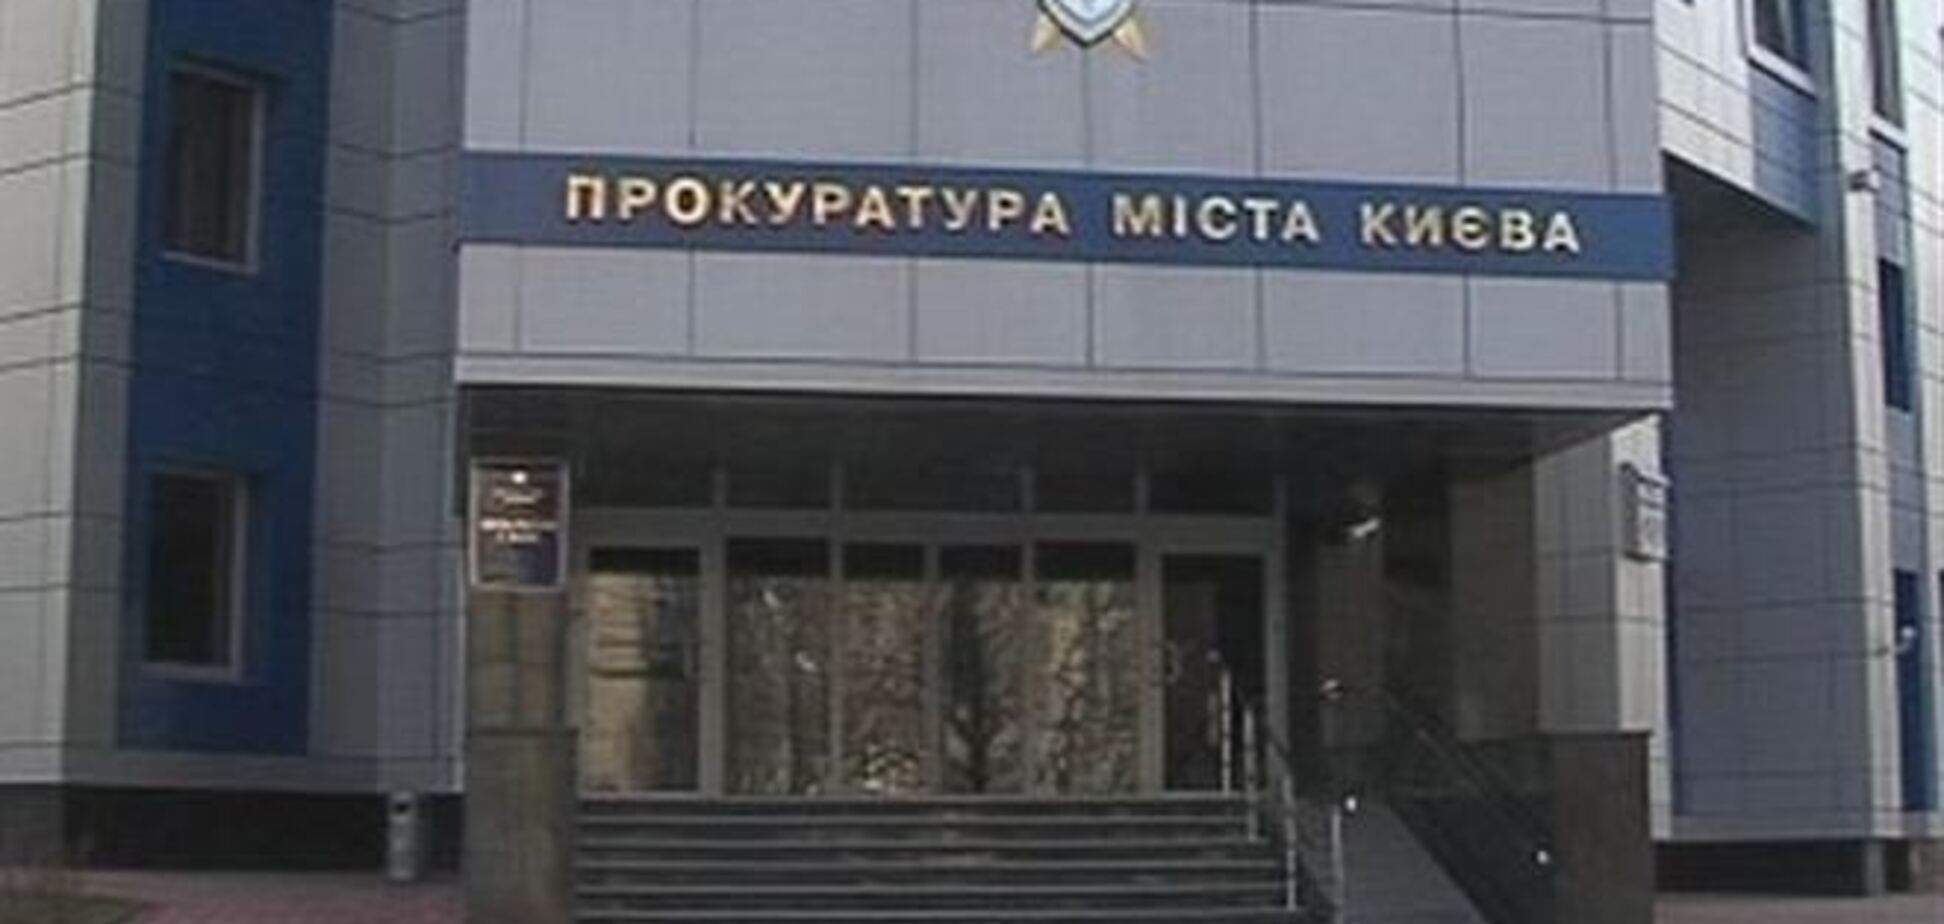 Прокуратура требует вернуть землю на 21 млн грн в центре Киева